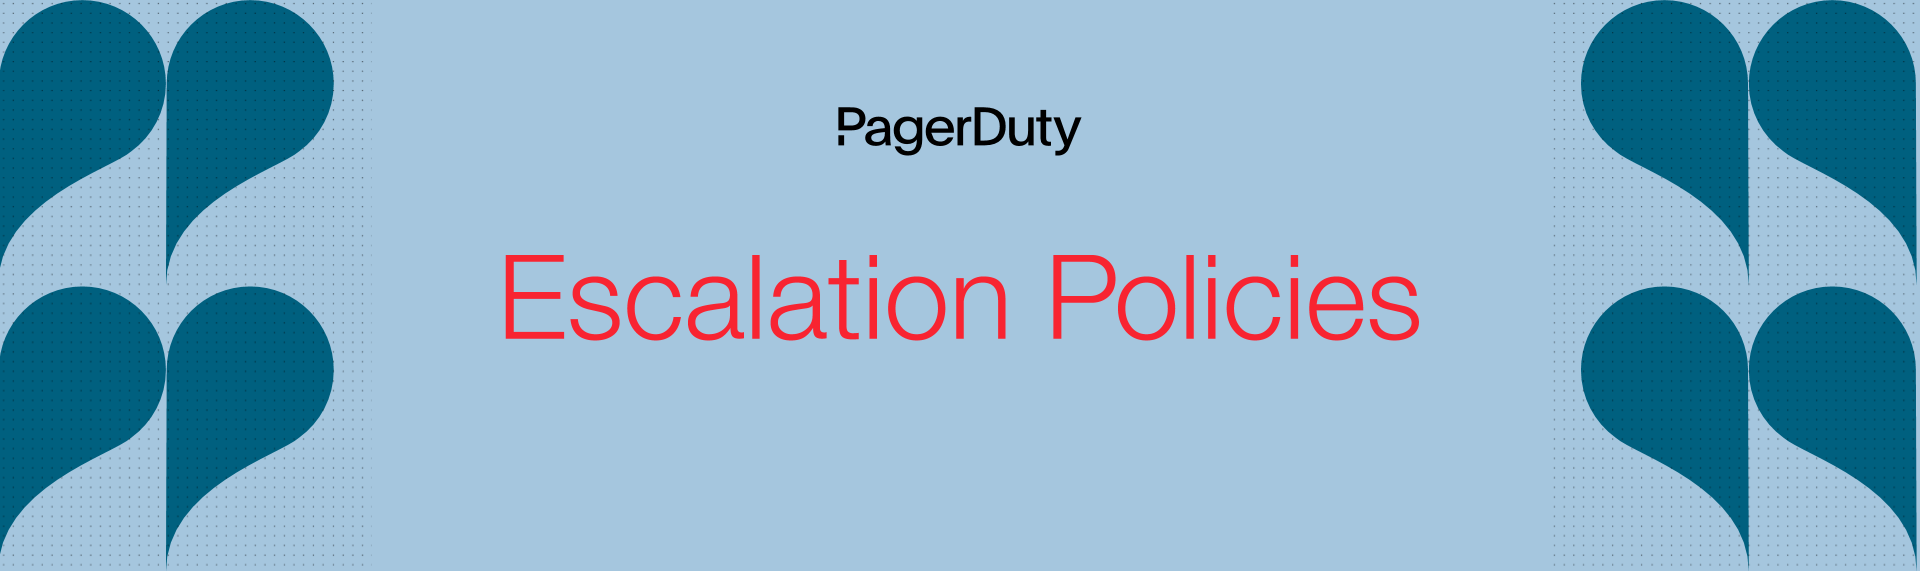 Escalation Policies